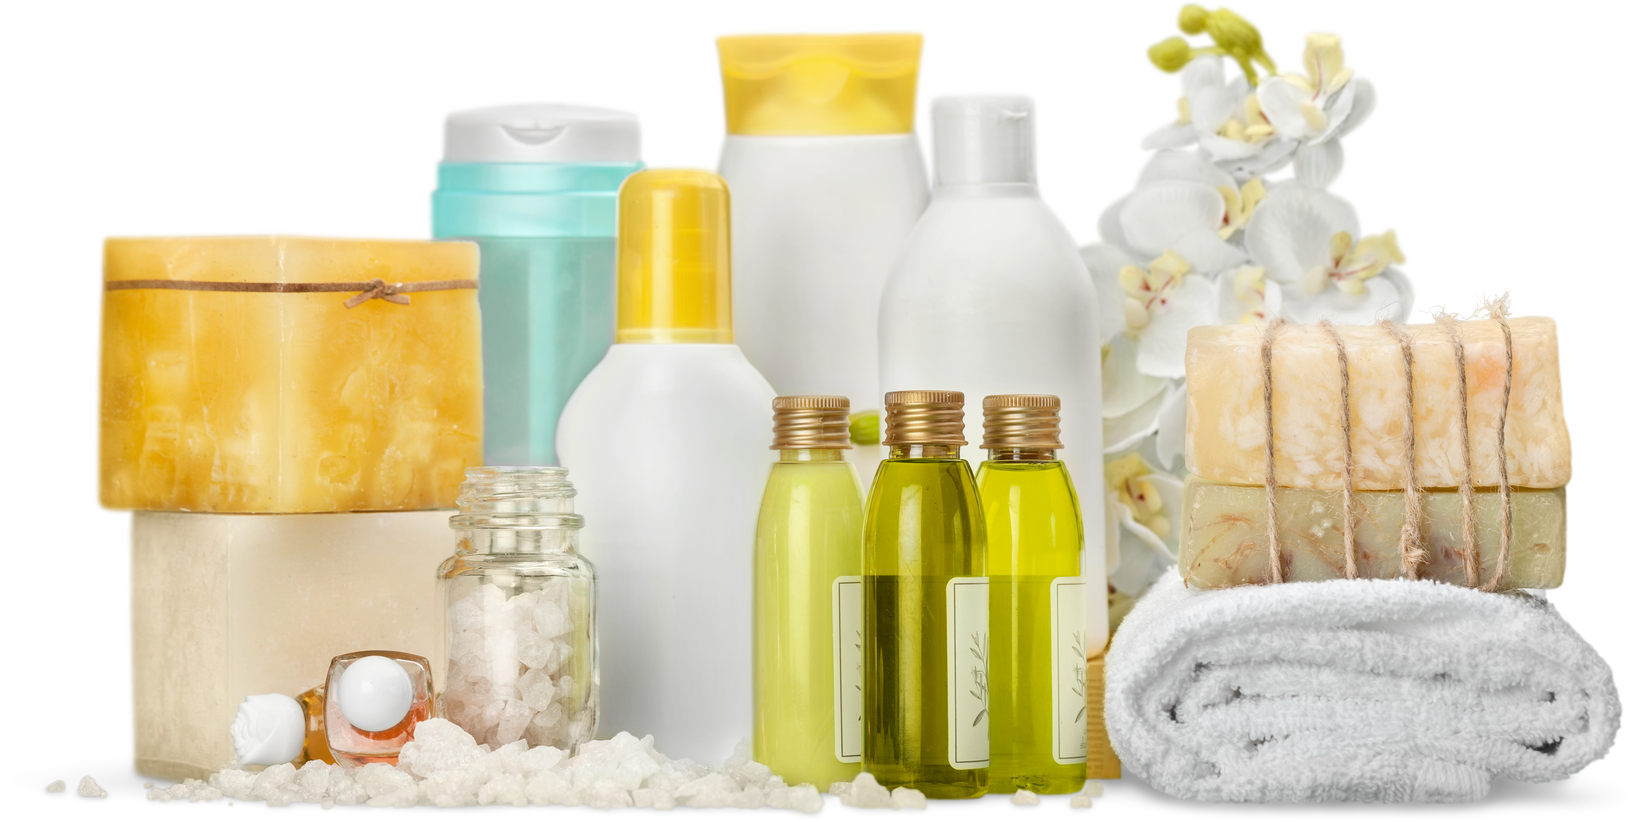 aromatherapy products cutout